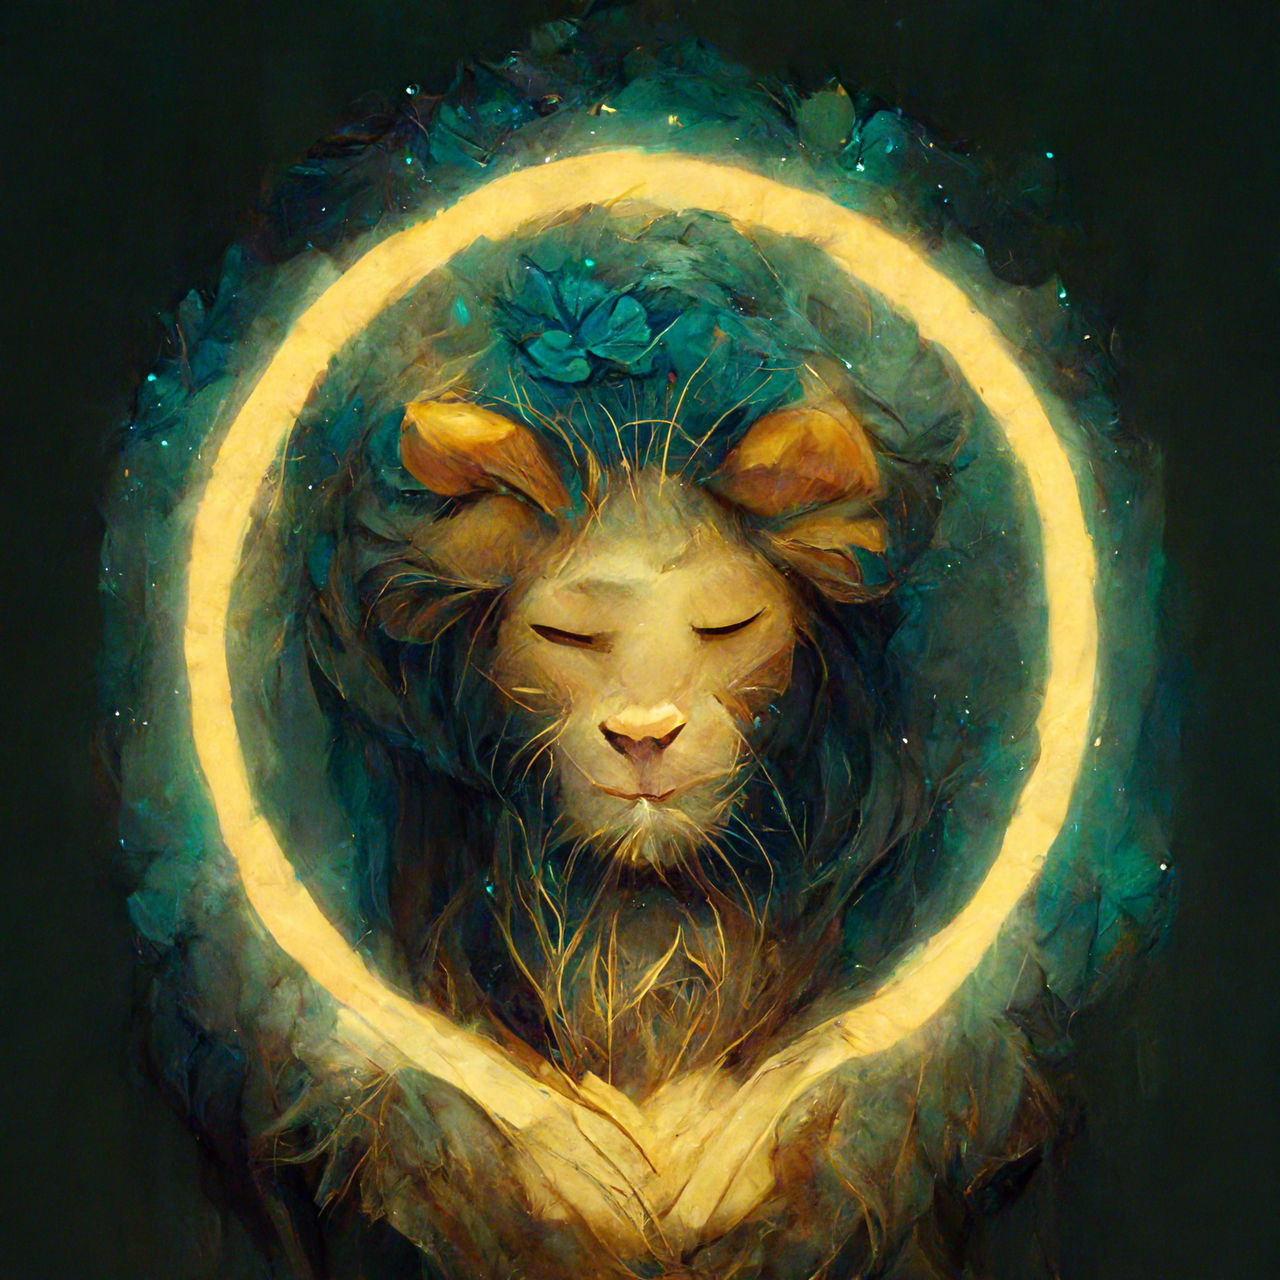 Zodiac Sign Leo by Sherley by SherleySevenfold on DeviantArt